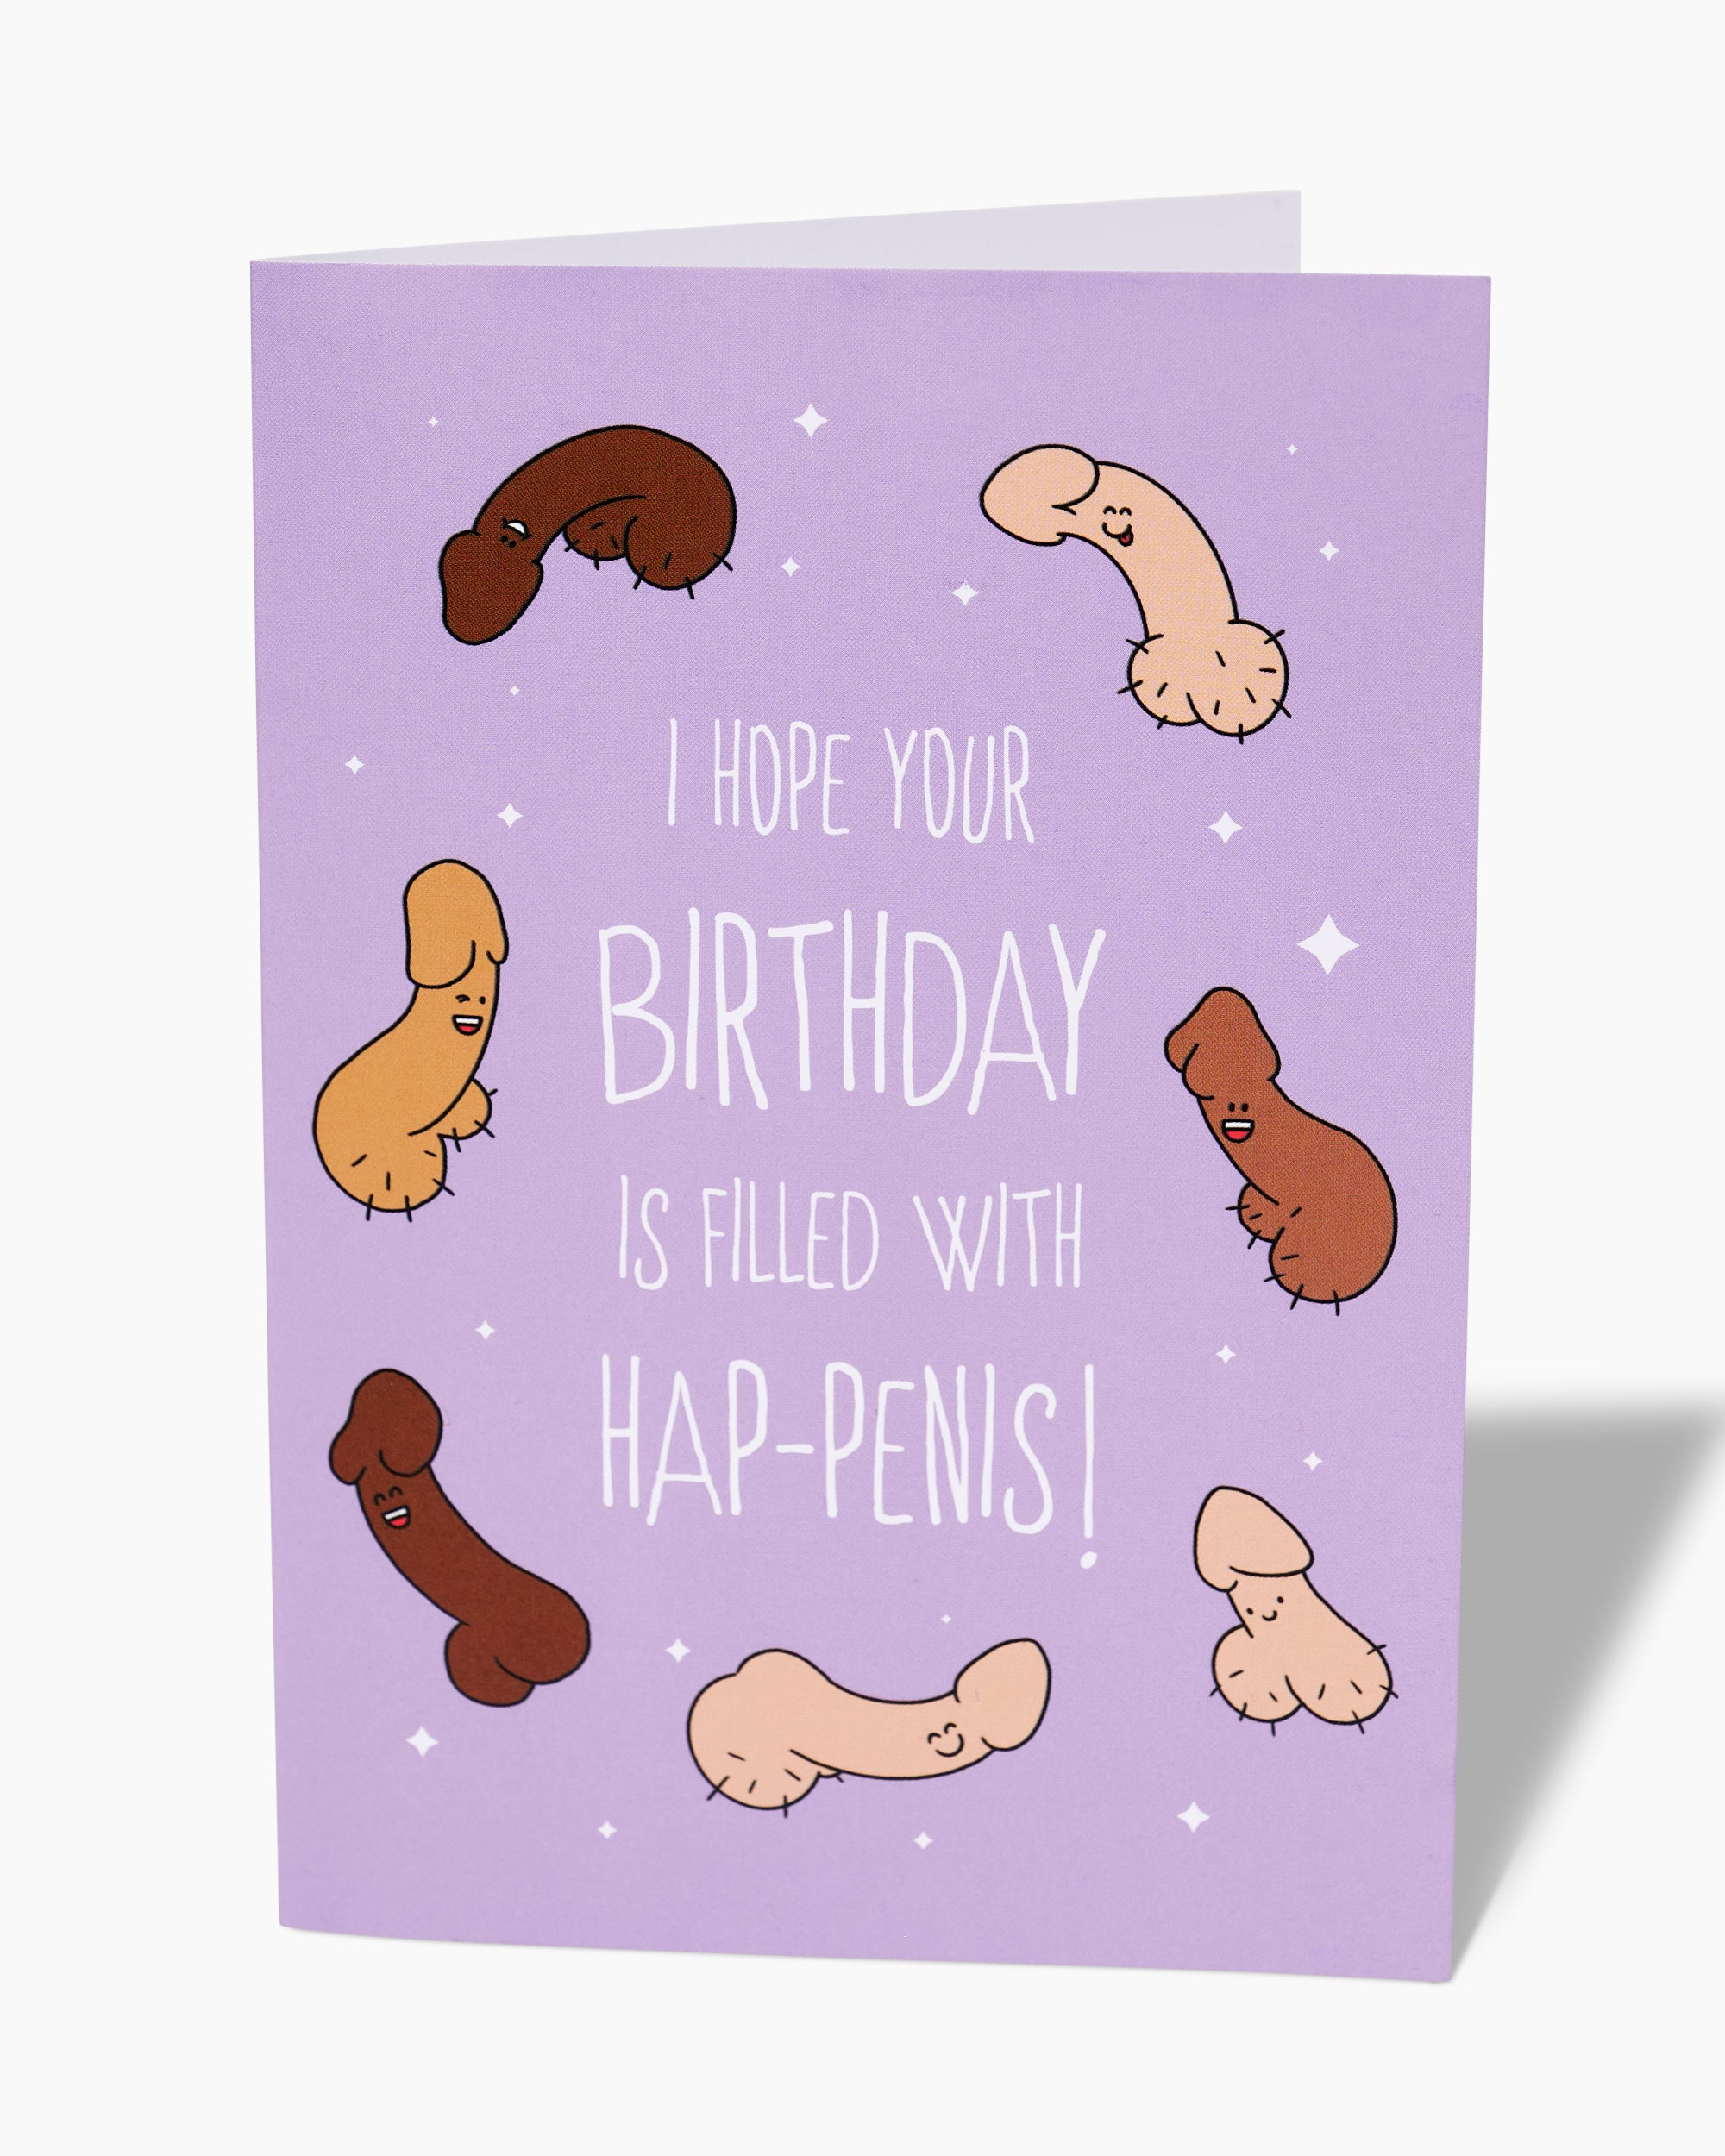 Hap-penis Greeting Card Australia Online